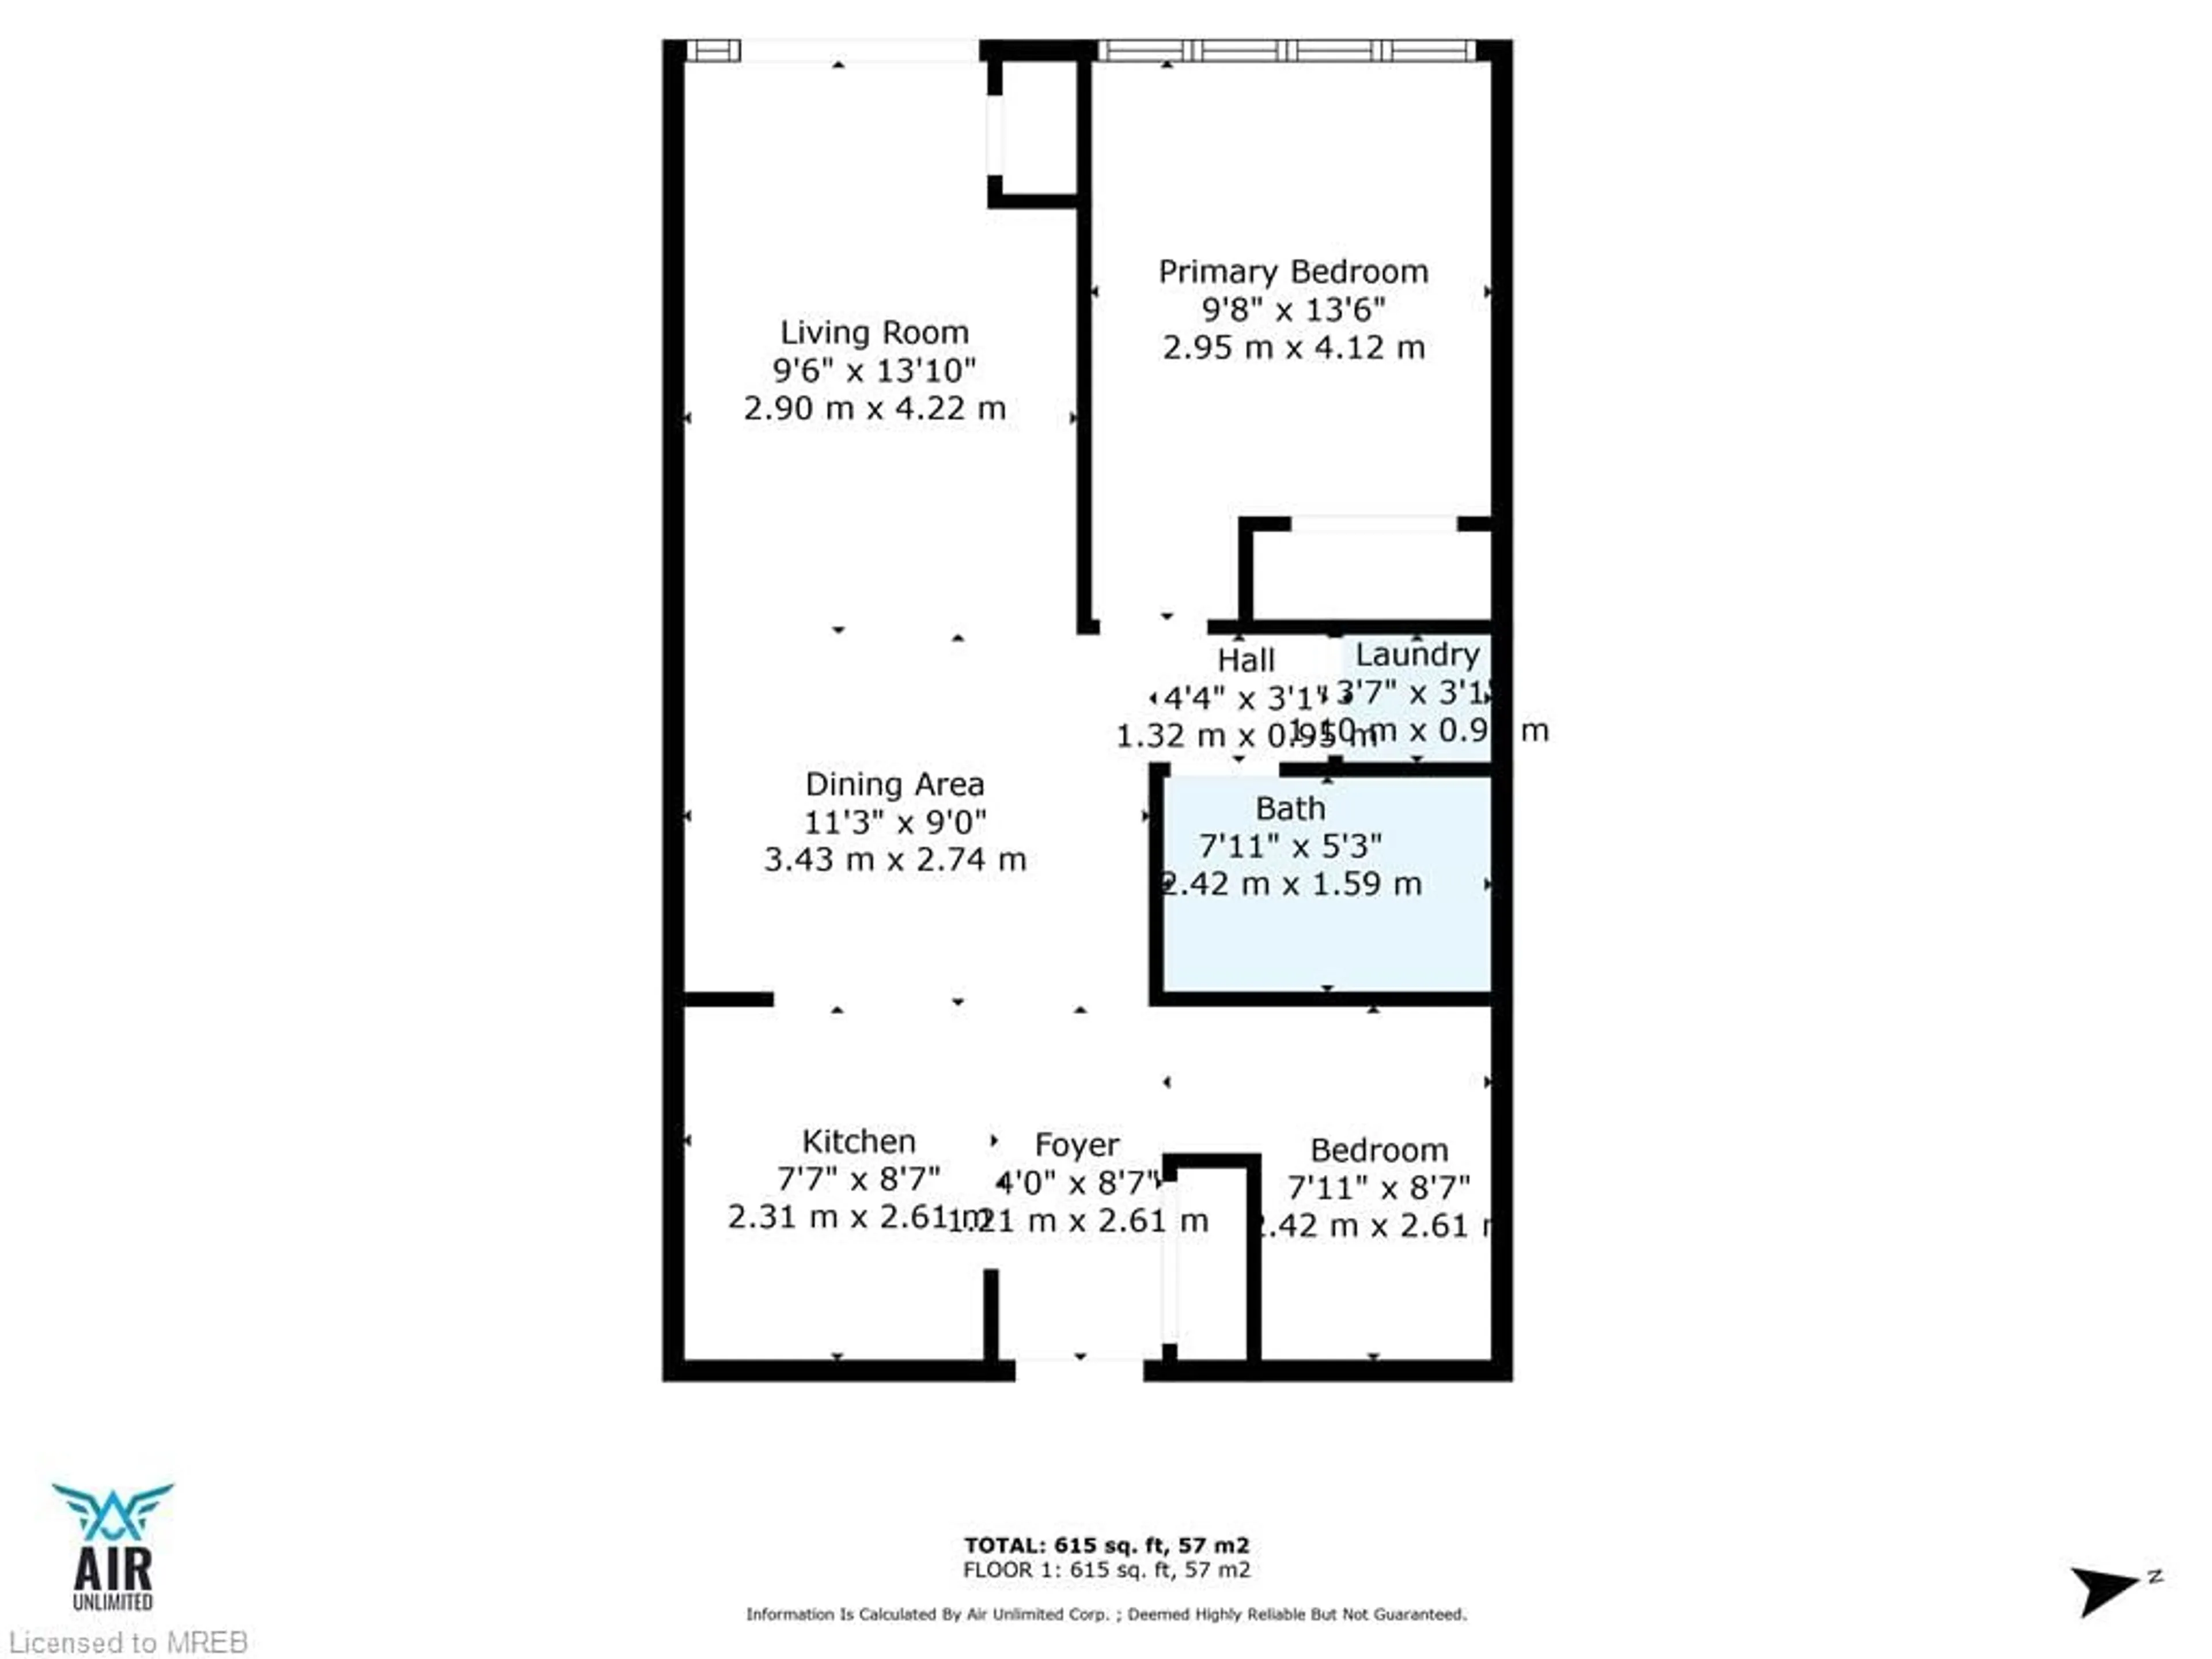 Floor plan for 128 King St #807, Waterloo Ontario N2J 0E9